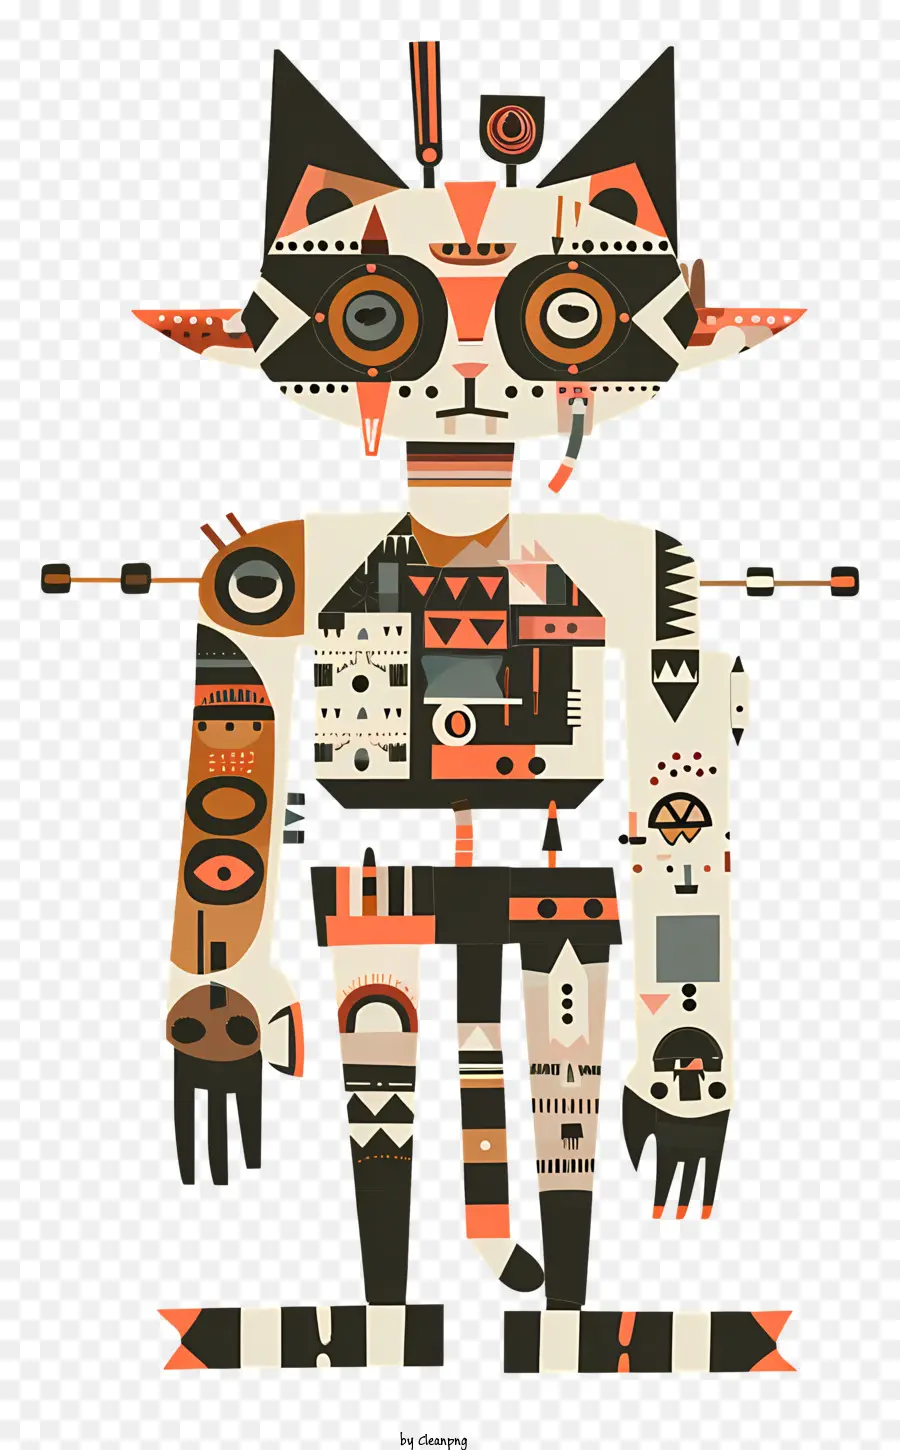 Wunderliche Figur Robotertechnologie Künstliche Intelligenz Sci-Fi - Roboter mit Gesicht, Armen, Brustausrüstung, Beinen